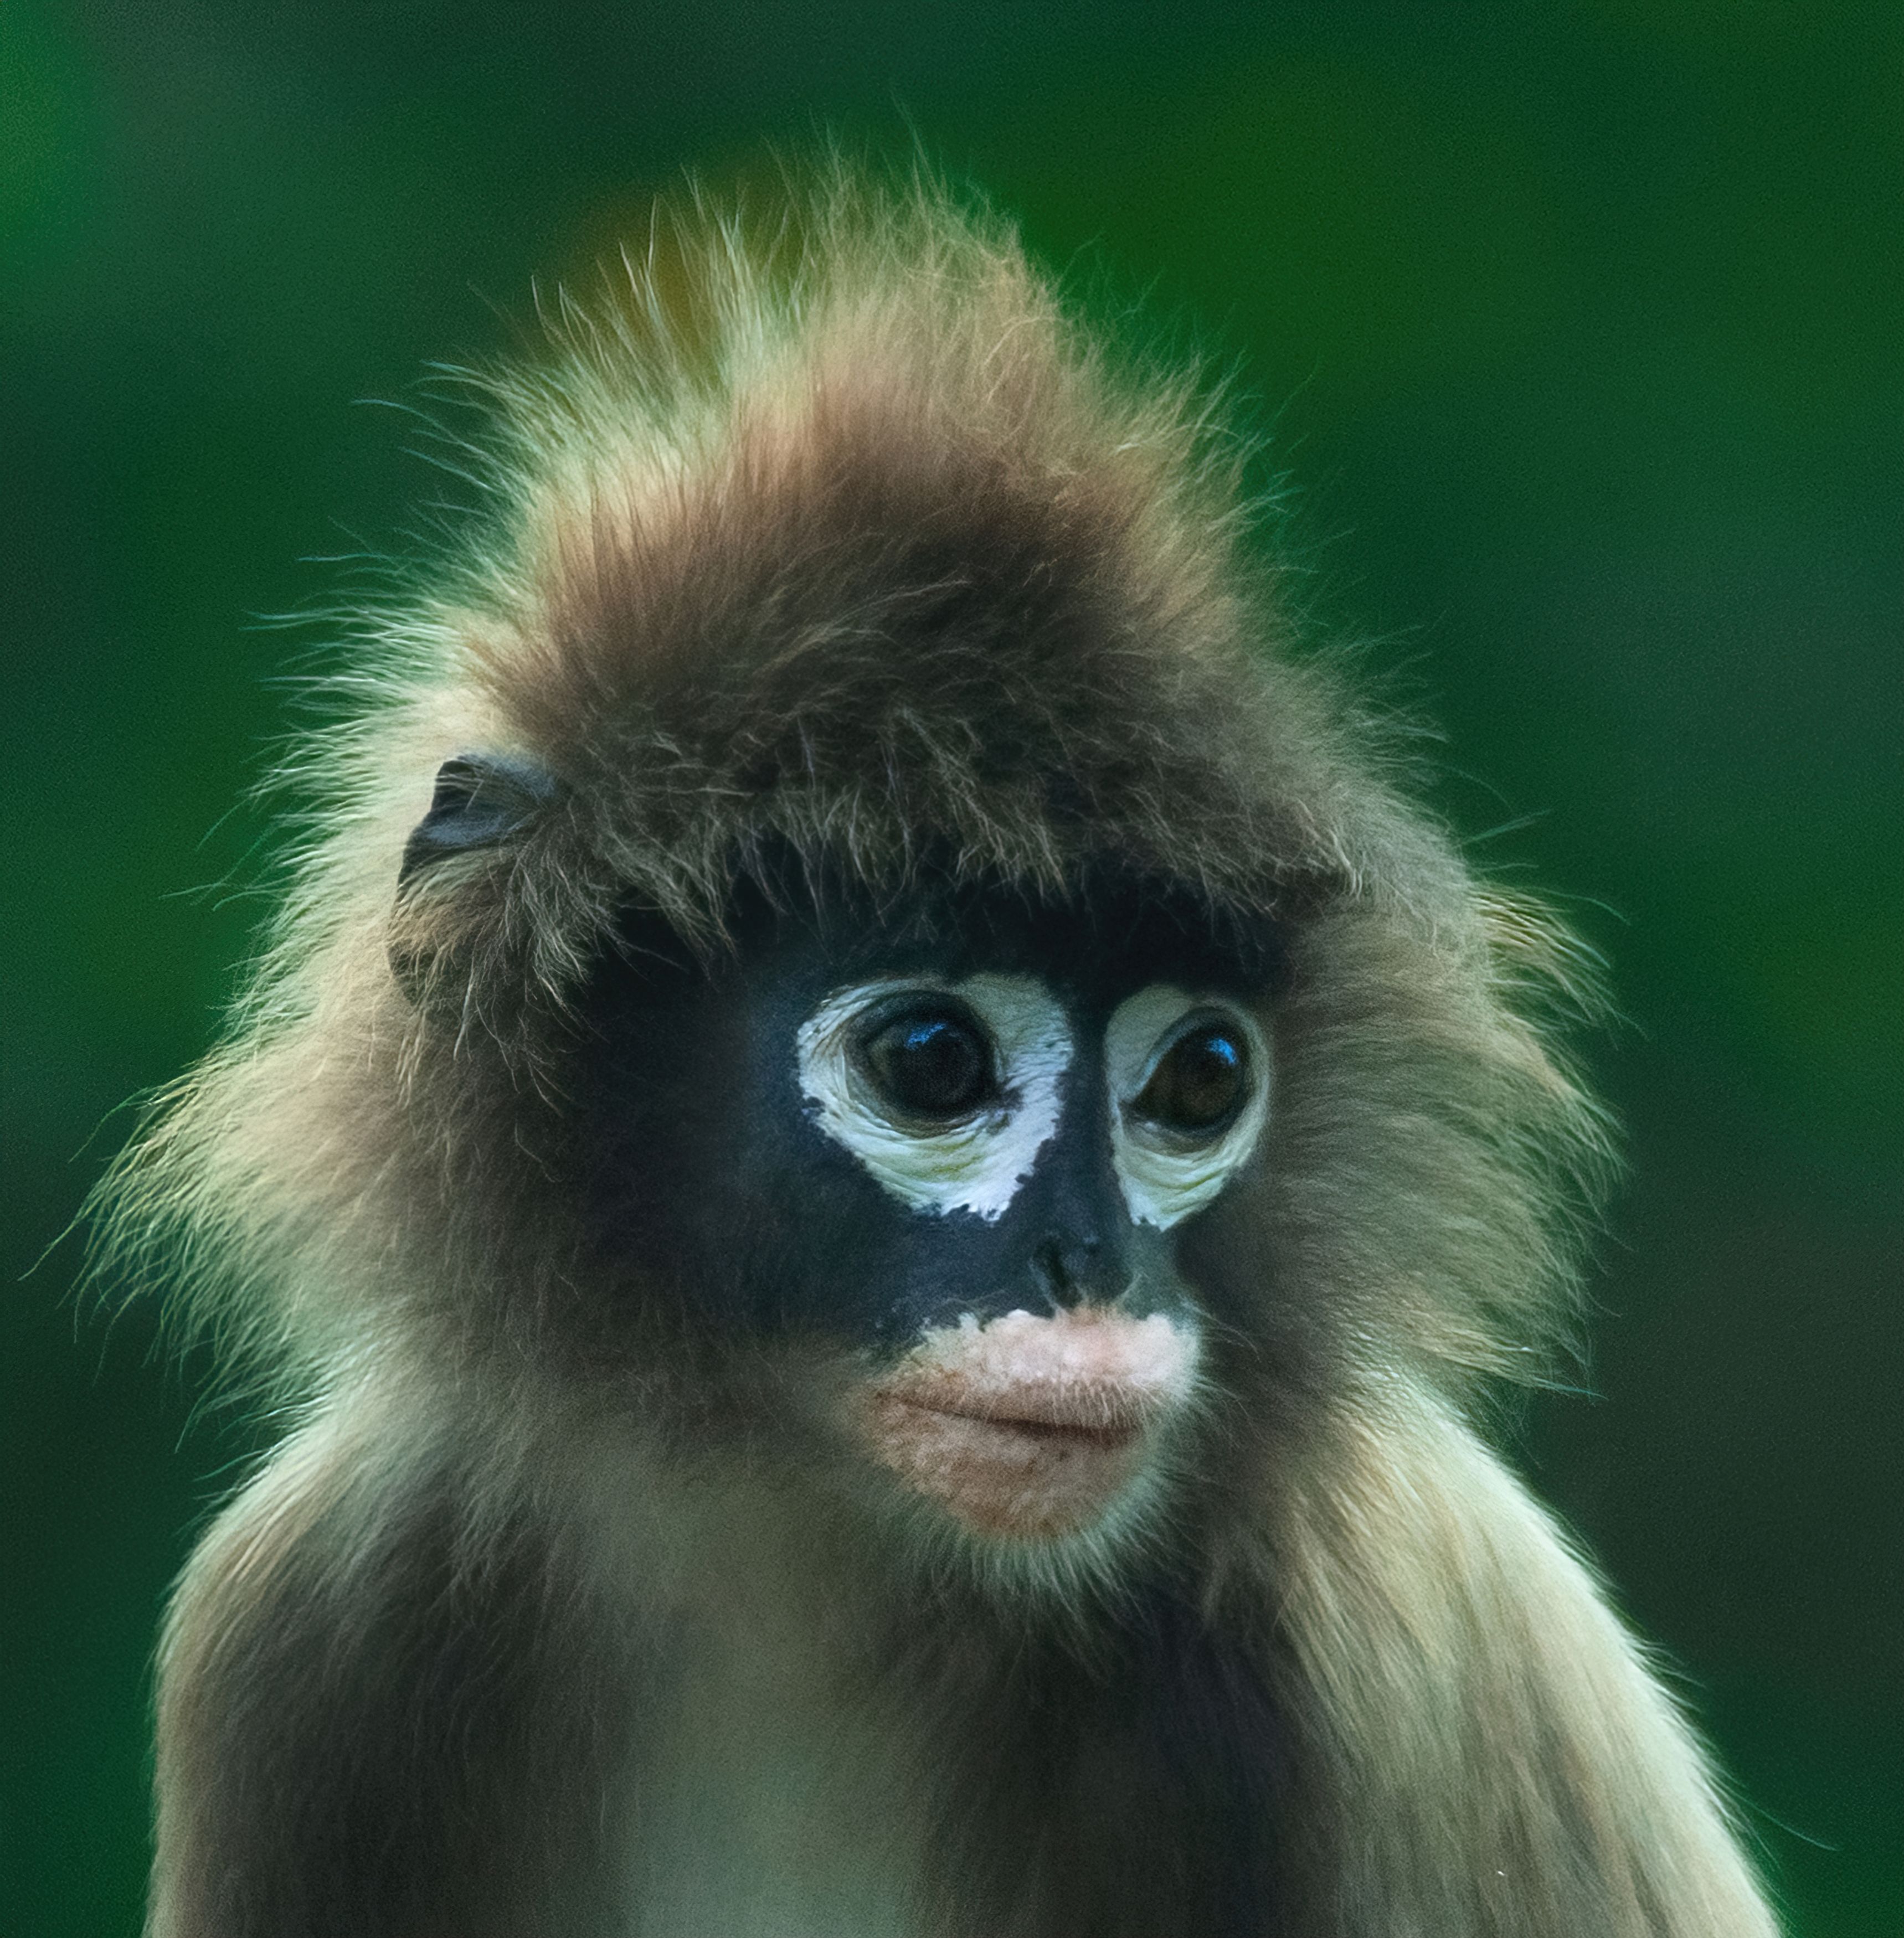 #primates #langur #wildlife #portrait #indianwildlite #endangered, Madhurya Mozumder